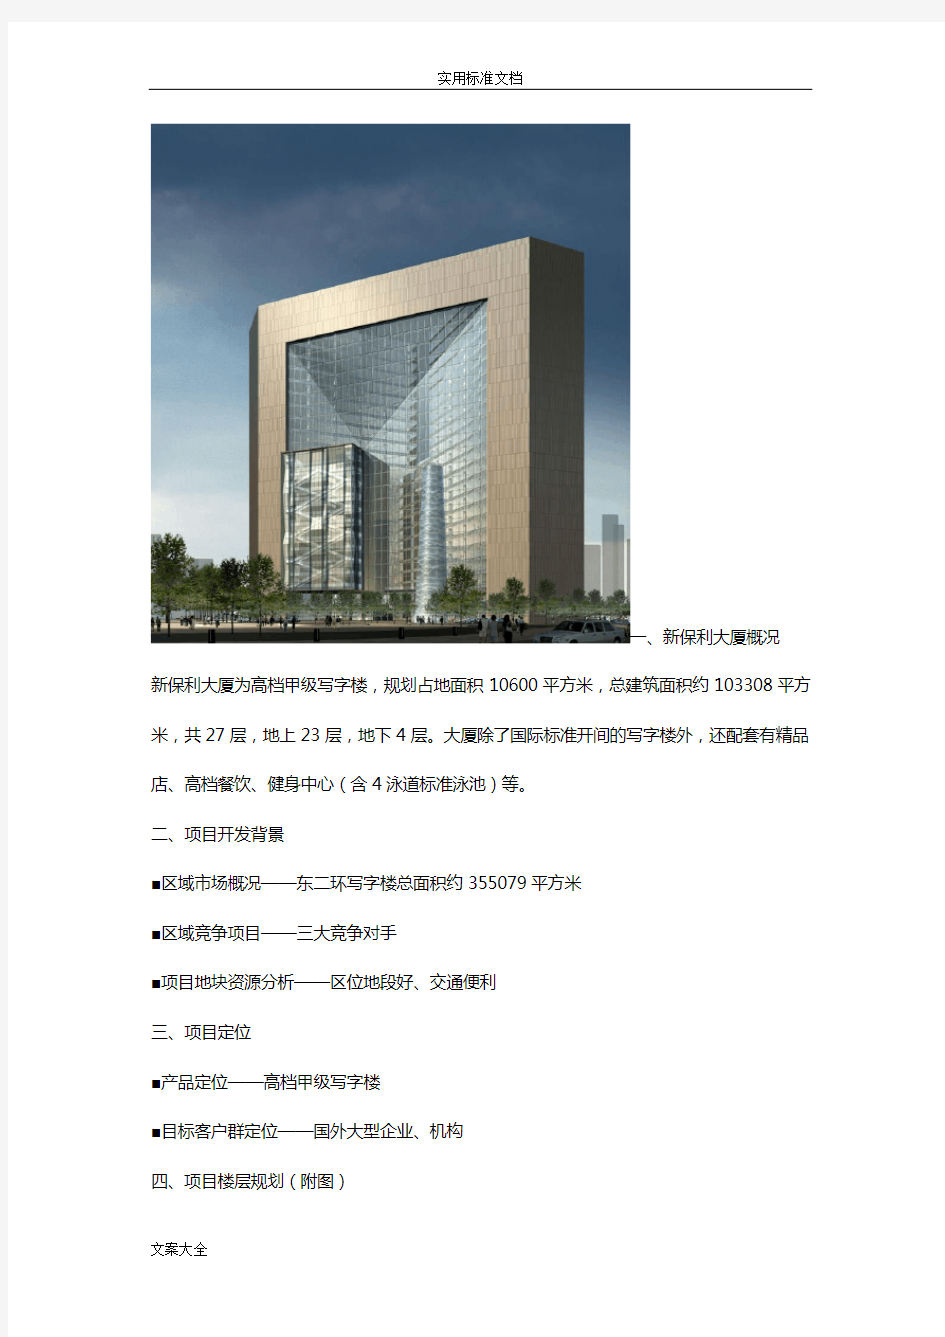 北京保利大厦案例分析报告